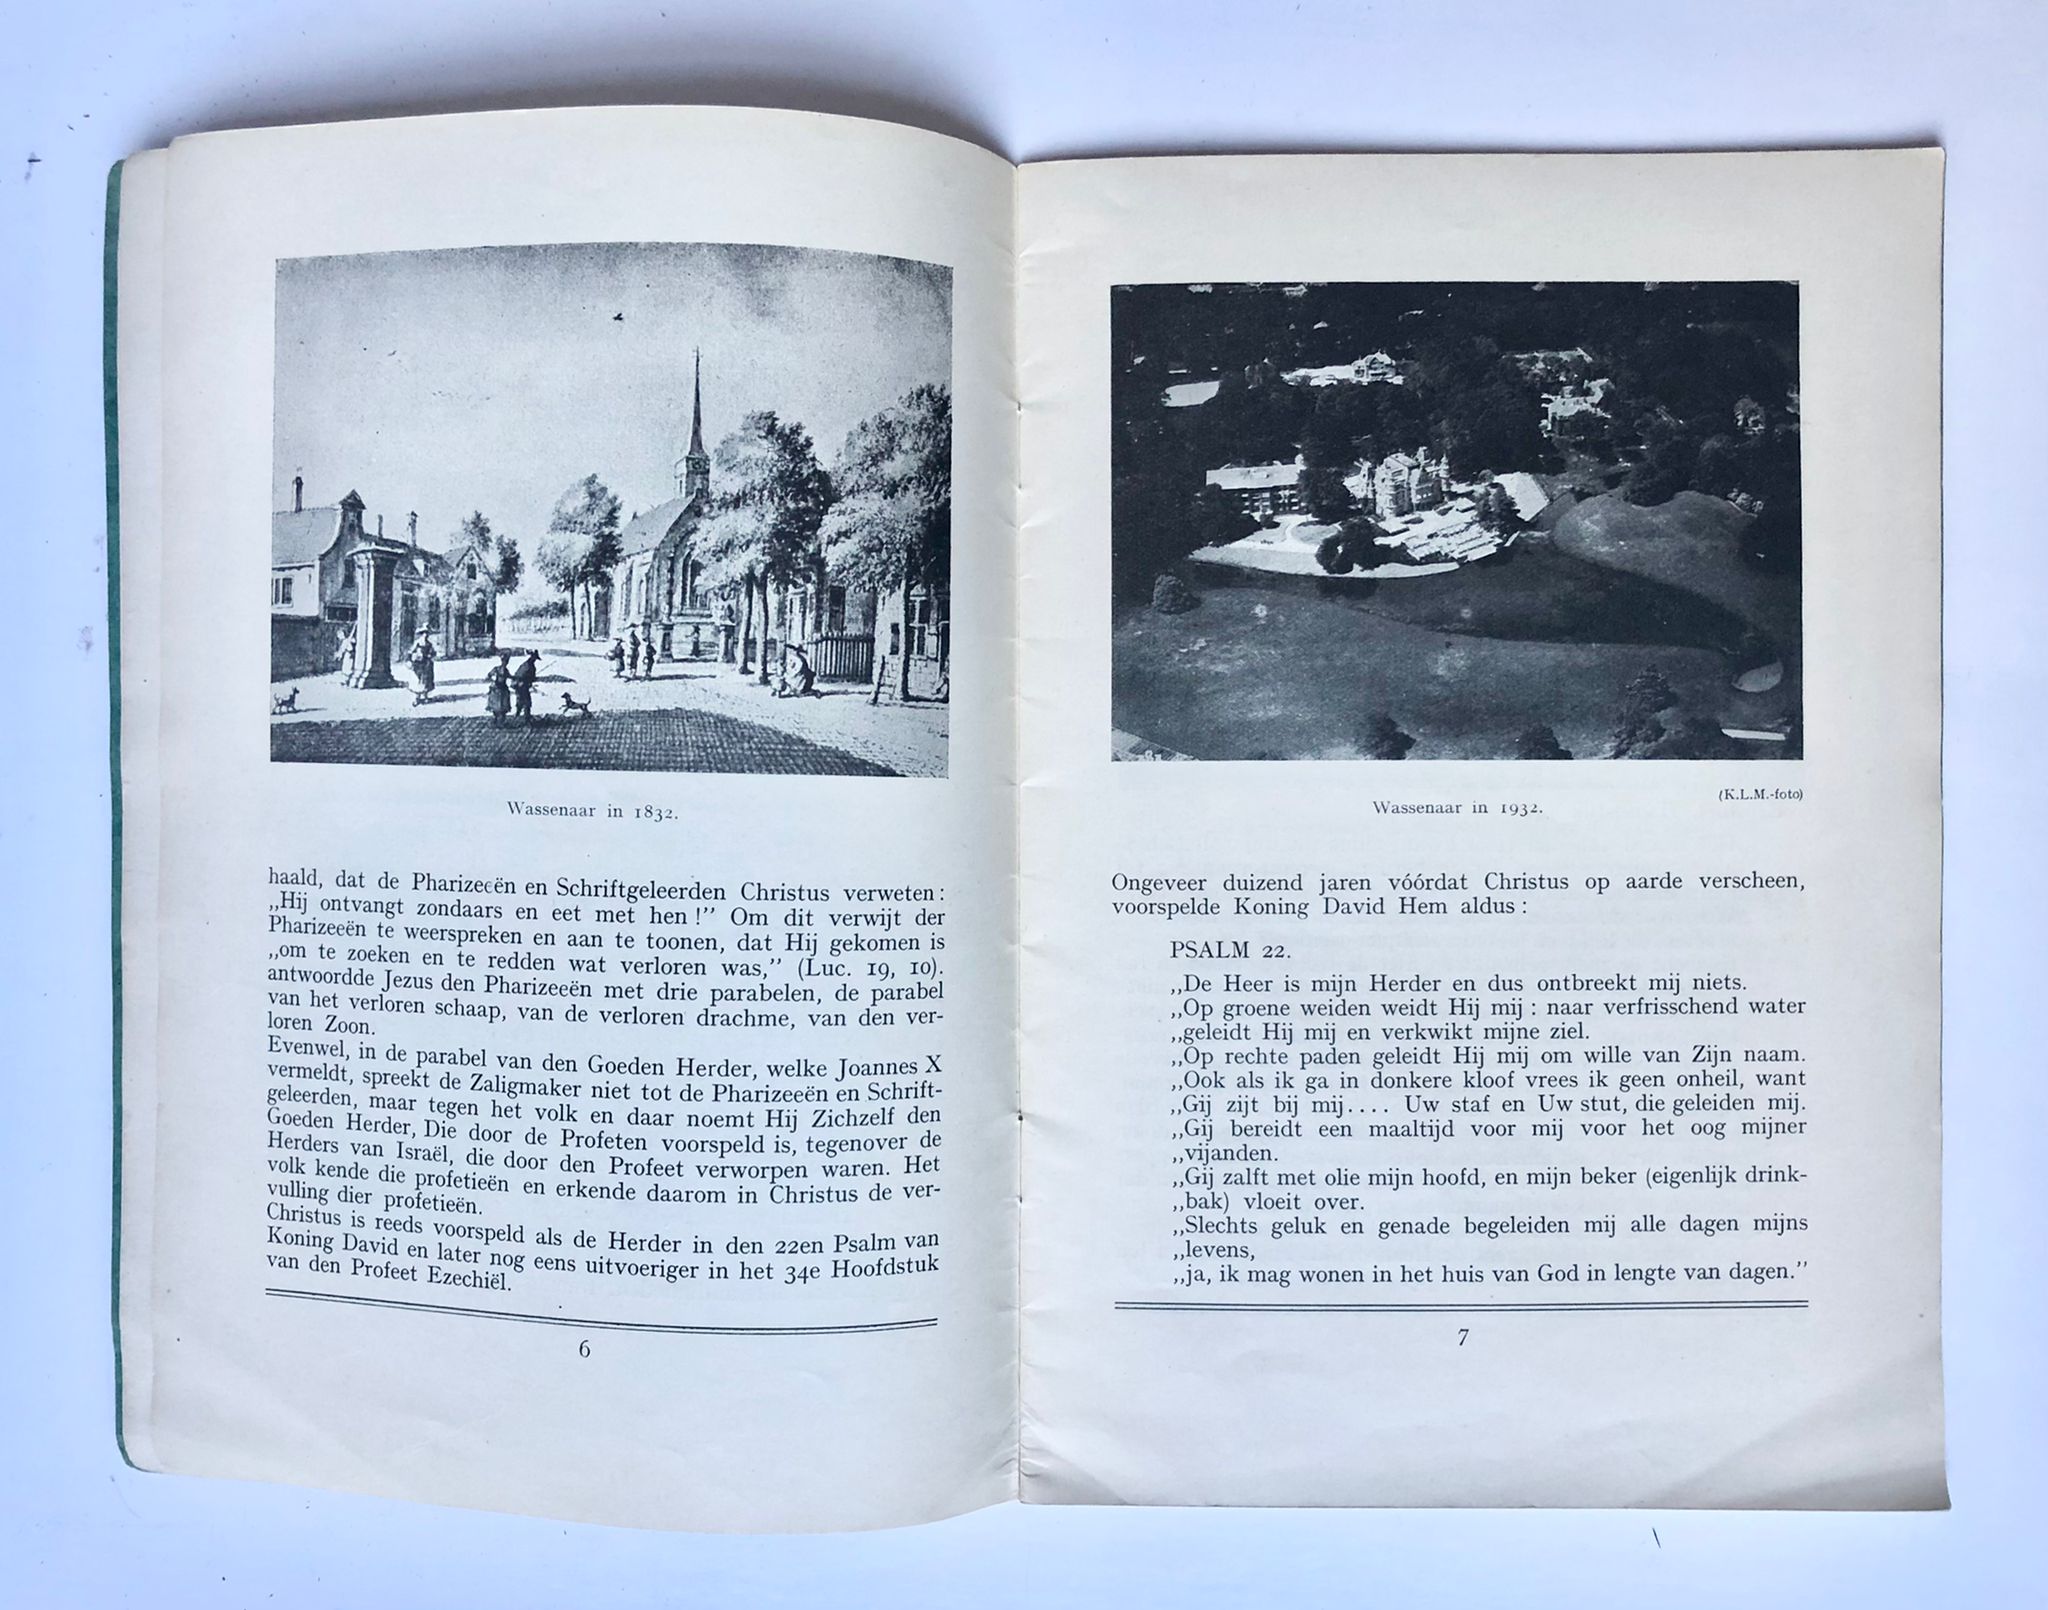 [Book, Wassenaar, 1932] De kerk van den goeden herder te Wassenaar, C. N. Teulings’ Kon. Drukkerijen N. V., ’s-Hertogenbosch, Imprimatur. L. J. Boogmans, a.h.d. 24 Maart 1932, 40 pp.